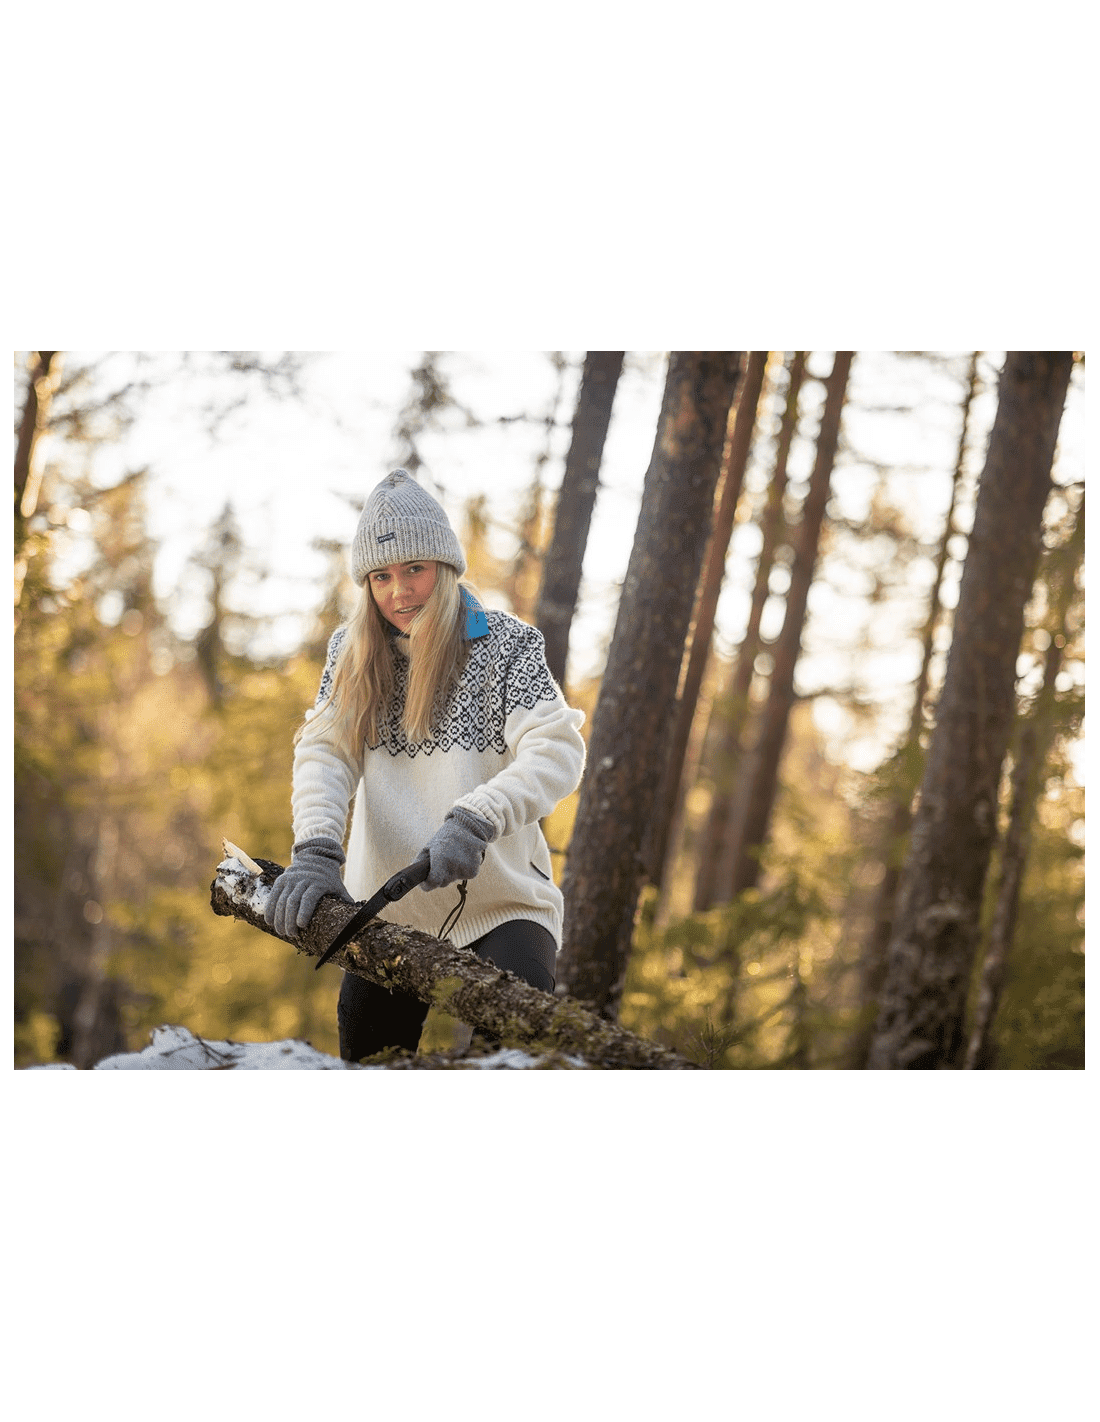 Bonnet d'hiver Snowy Fair Isle pour femme 100% laine commerce